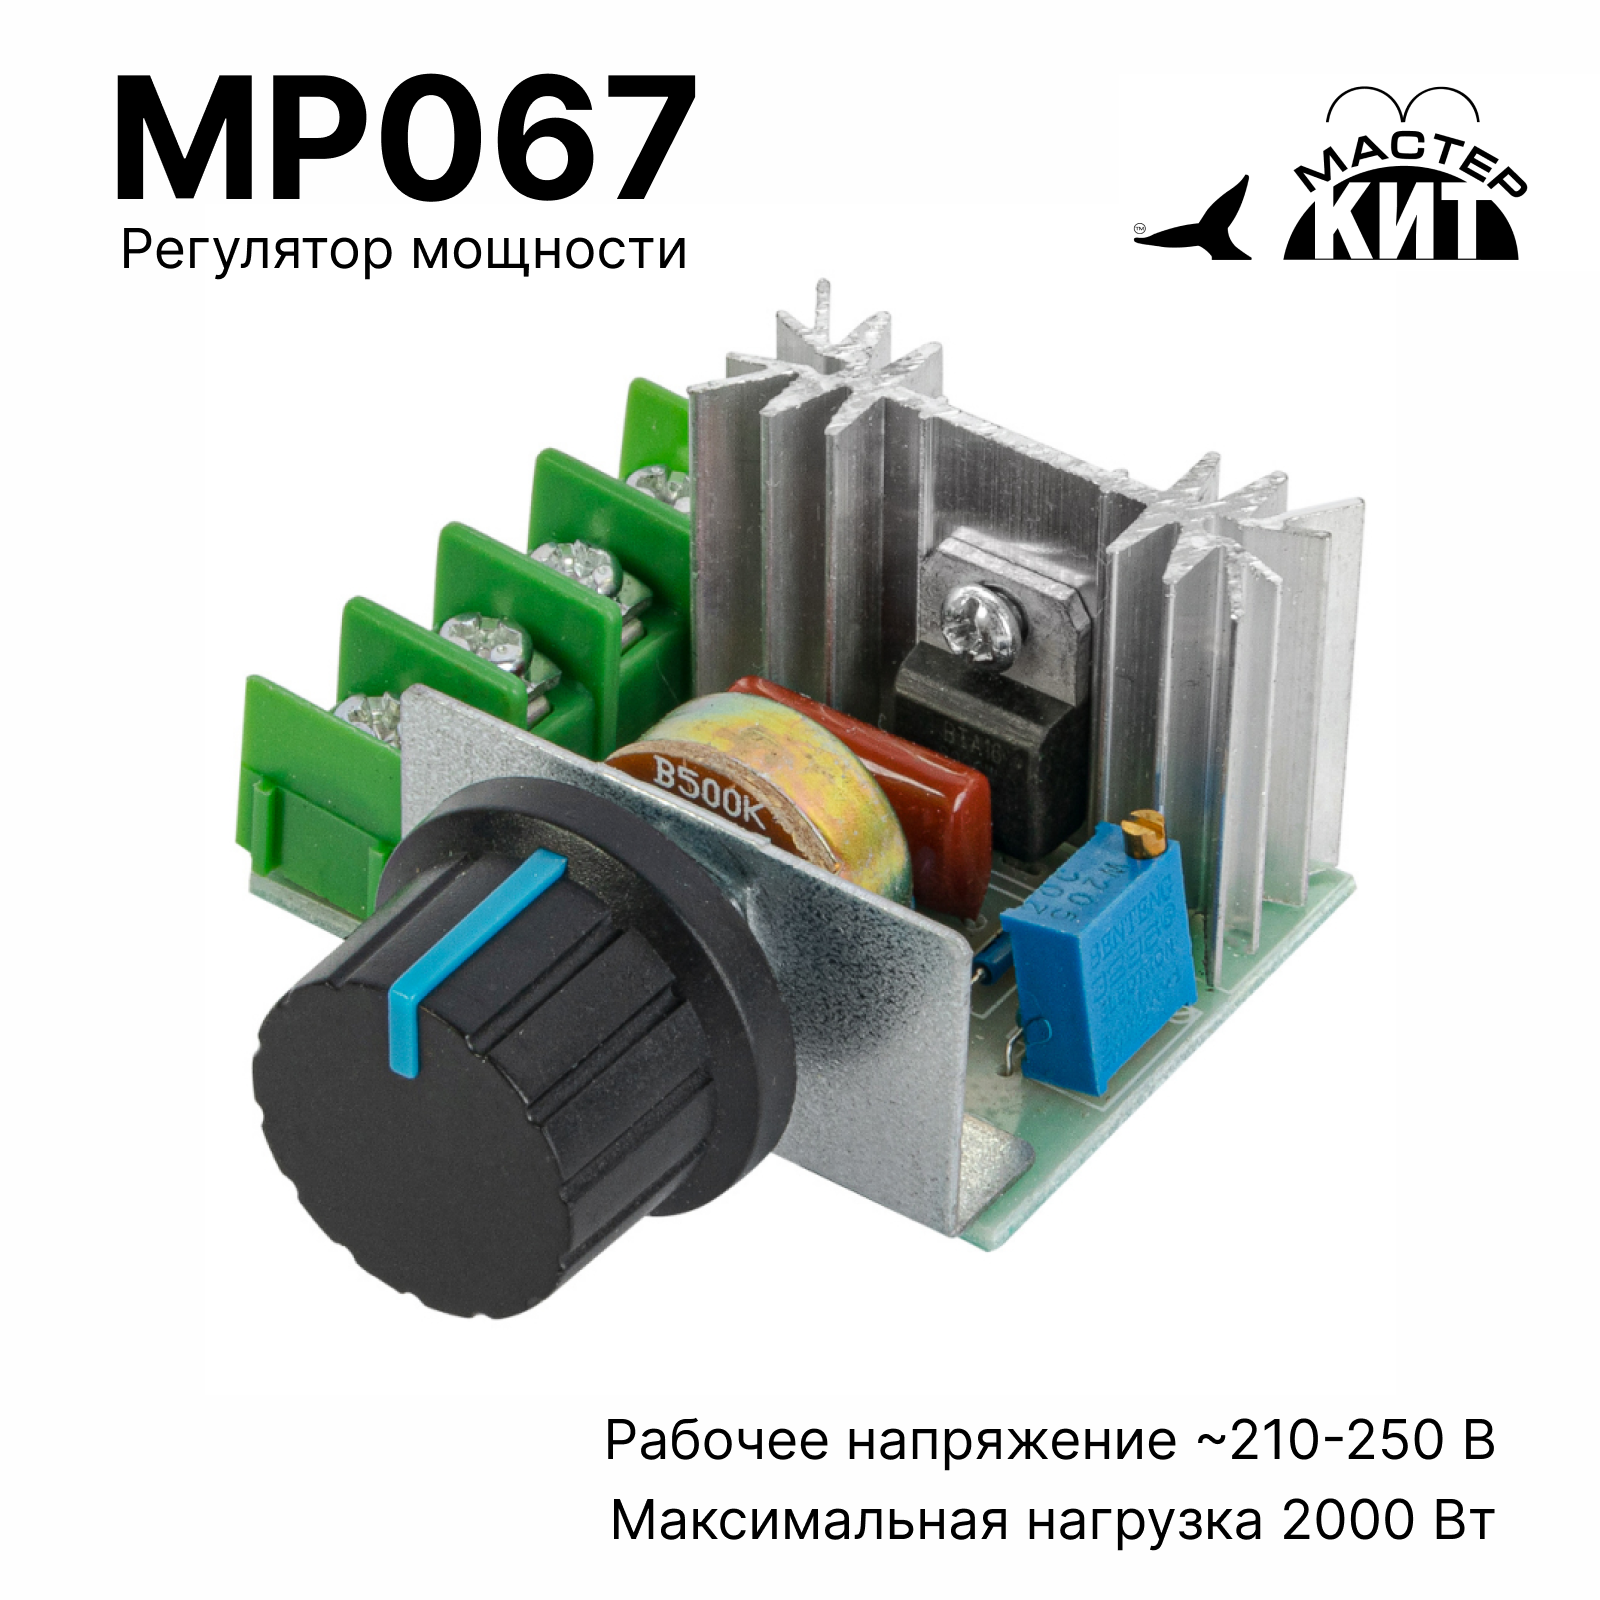 Регулятор мощности Мастер Кит MP067 2 кВт (радиатор, 220В, 9А) регулятор сп 90а нтк электроника sms пуск 90а ip56 2020год 4627082401691